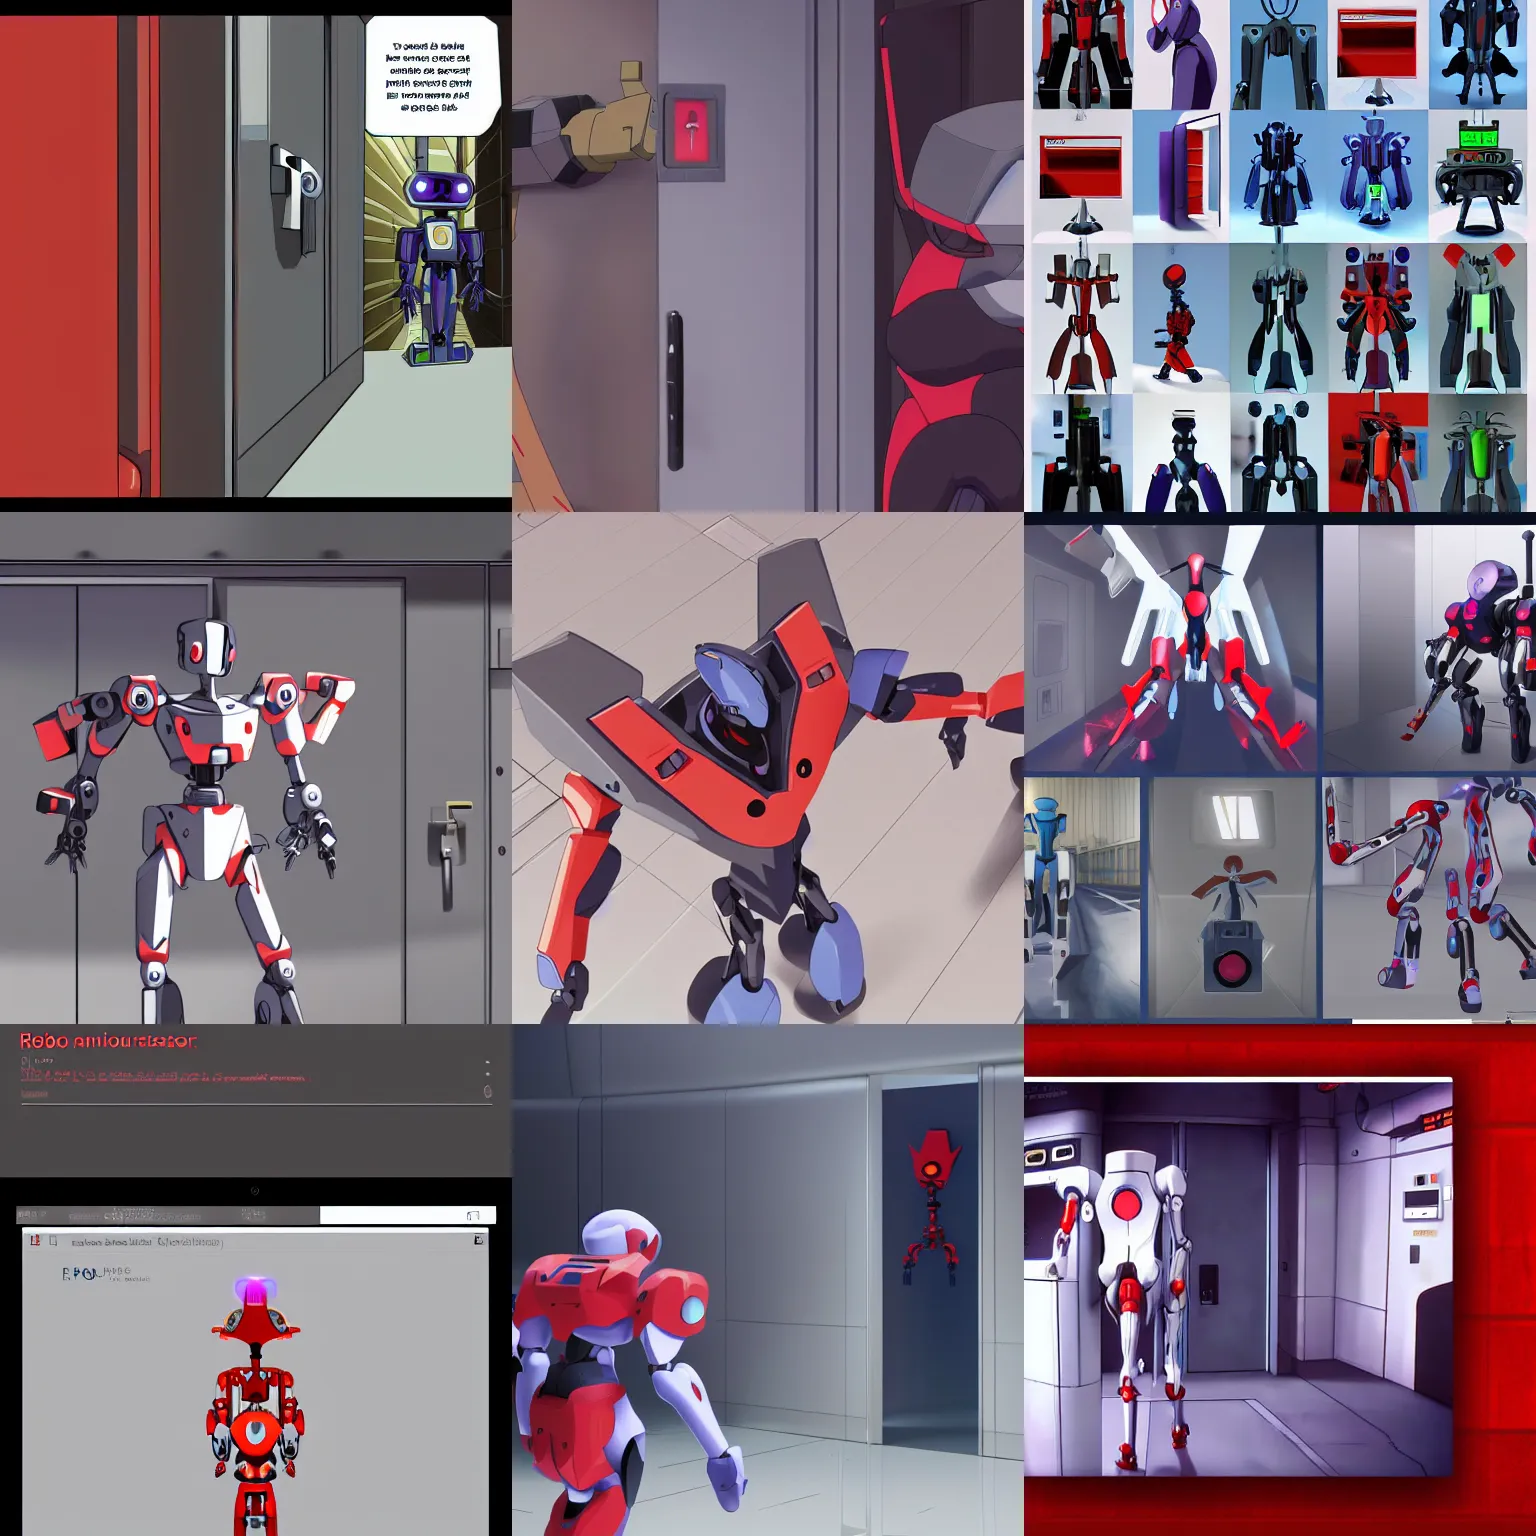 Prompt: robot opening the doors for everyone, screenshots of evangelion, trending on artstation